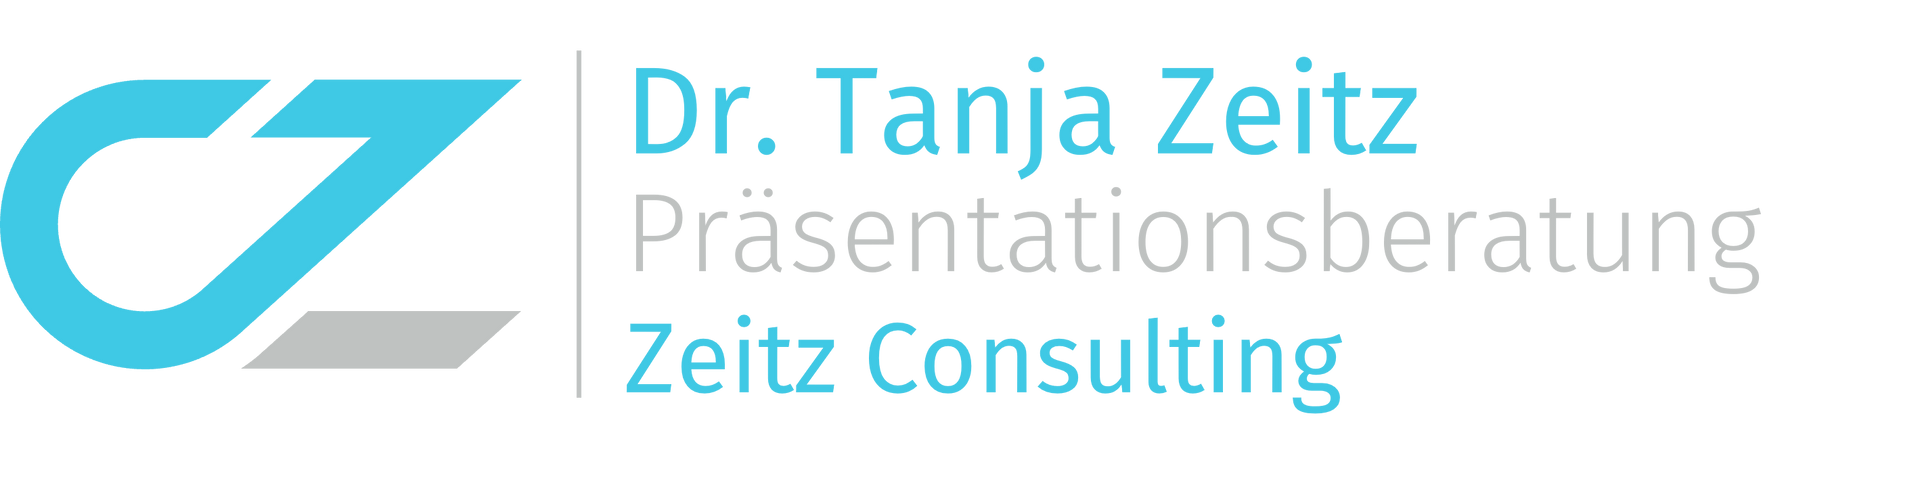 Logo Zeitz Consulting CZ Präsentationsberatung Dr. Tanja Zeitz